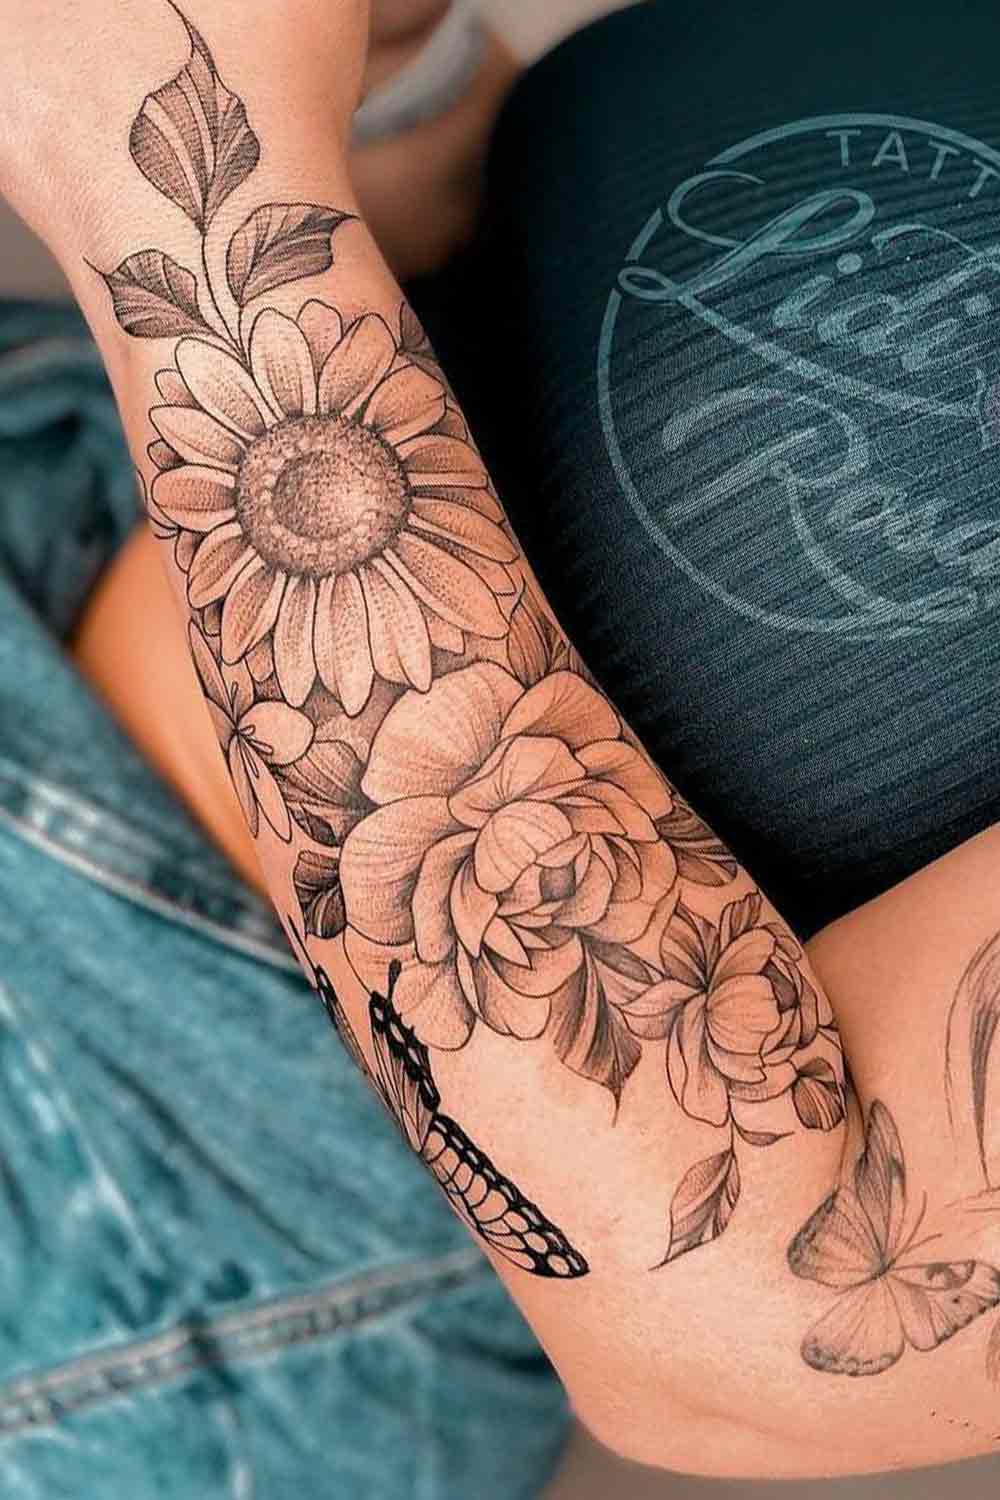 tatuagem-floral-no-antebraco-1 